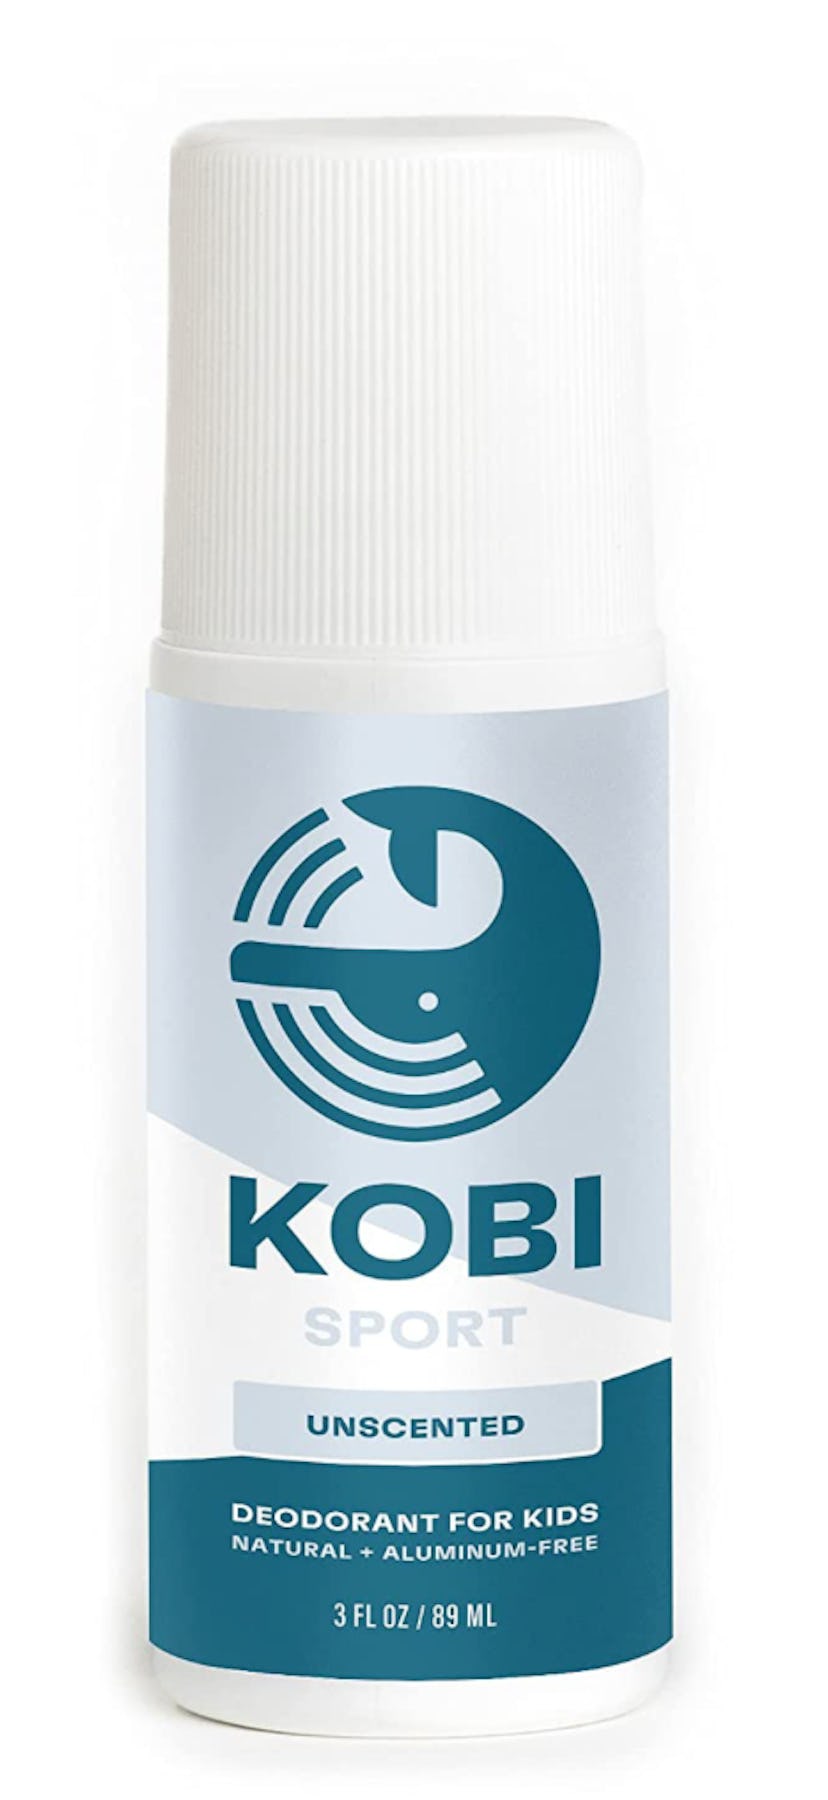 Kobi Sport Deodorant for Kids Unscented For Kids